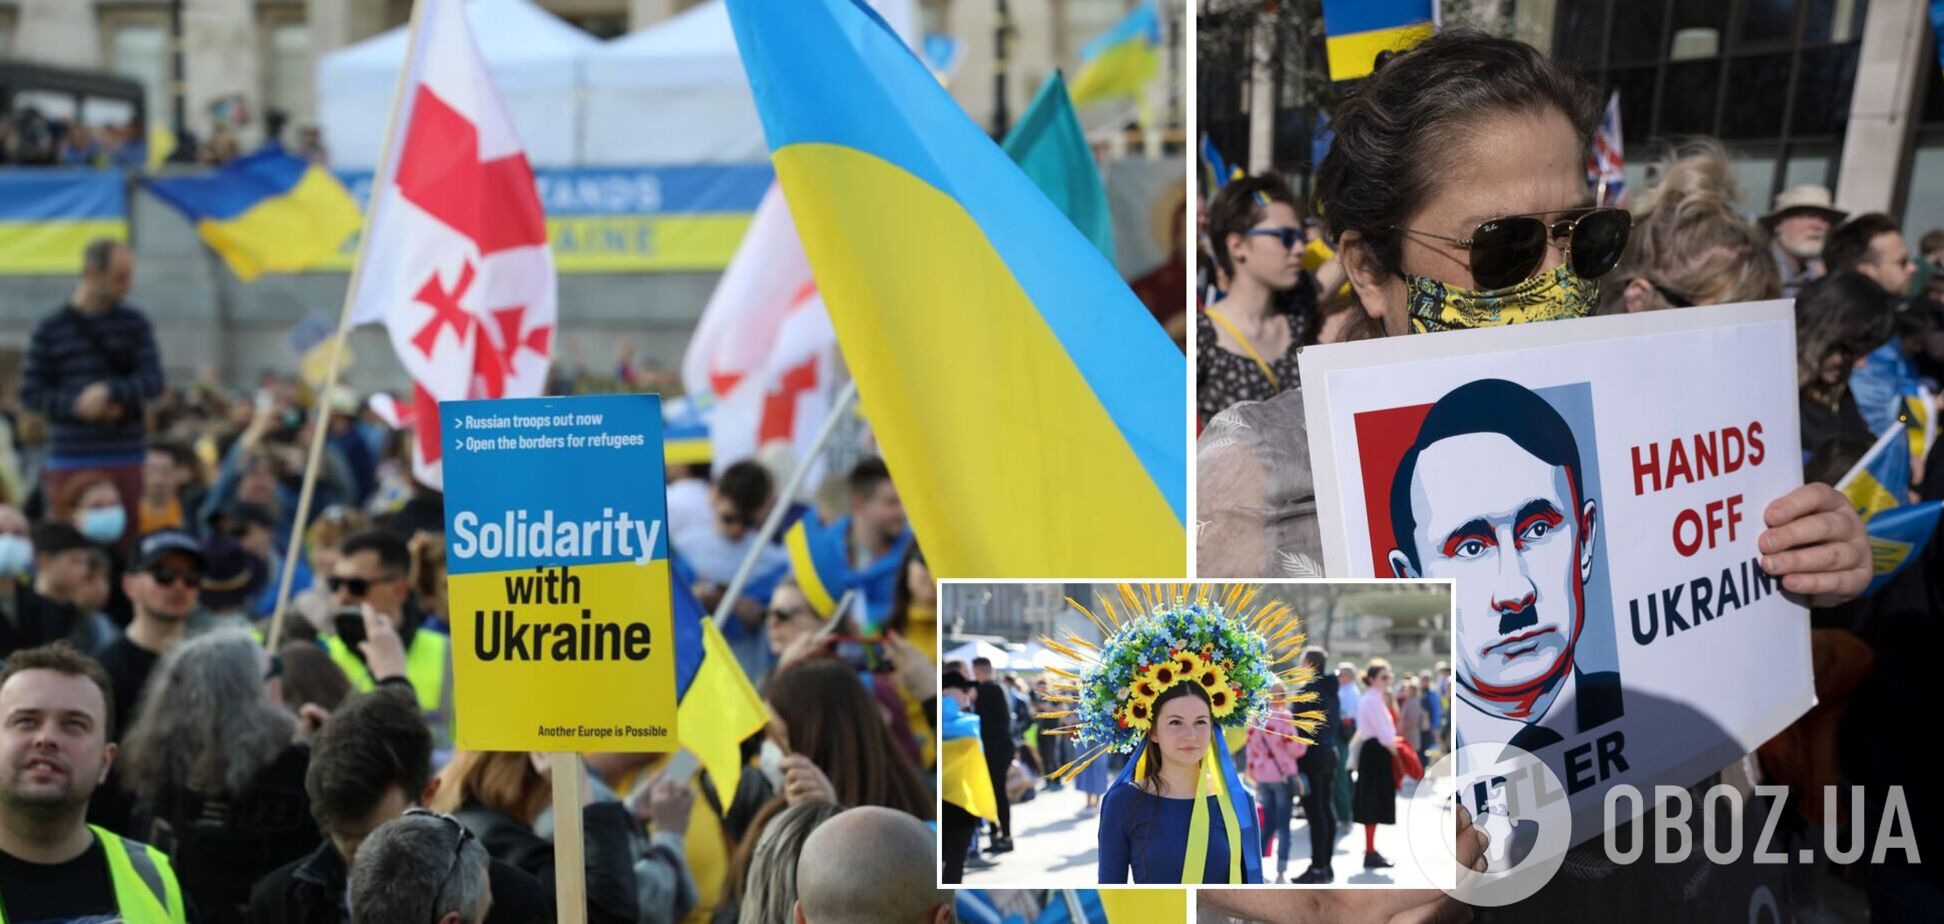 'We stand with Ukraine!': десятки тисяч осіб вийшли на мітинг на підтримку України в Лондоні. Фото і відео